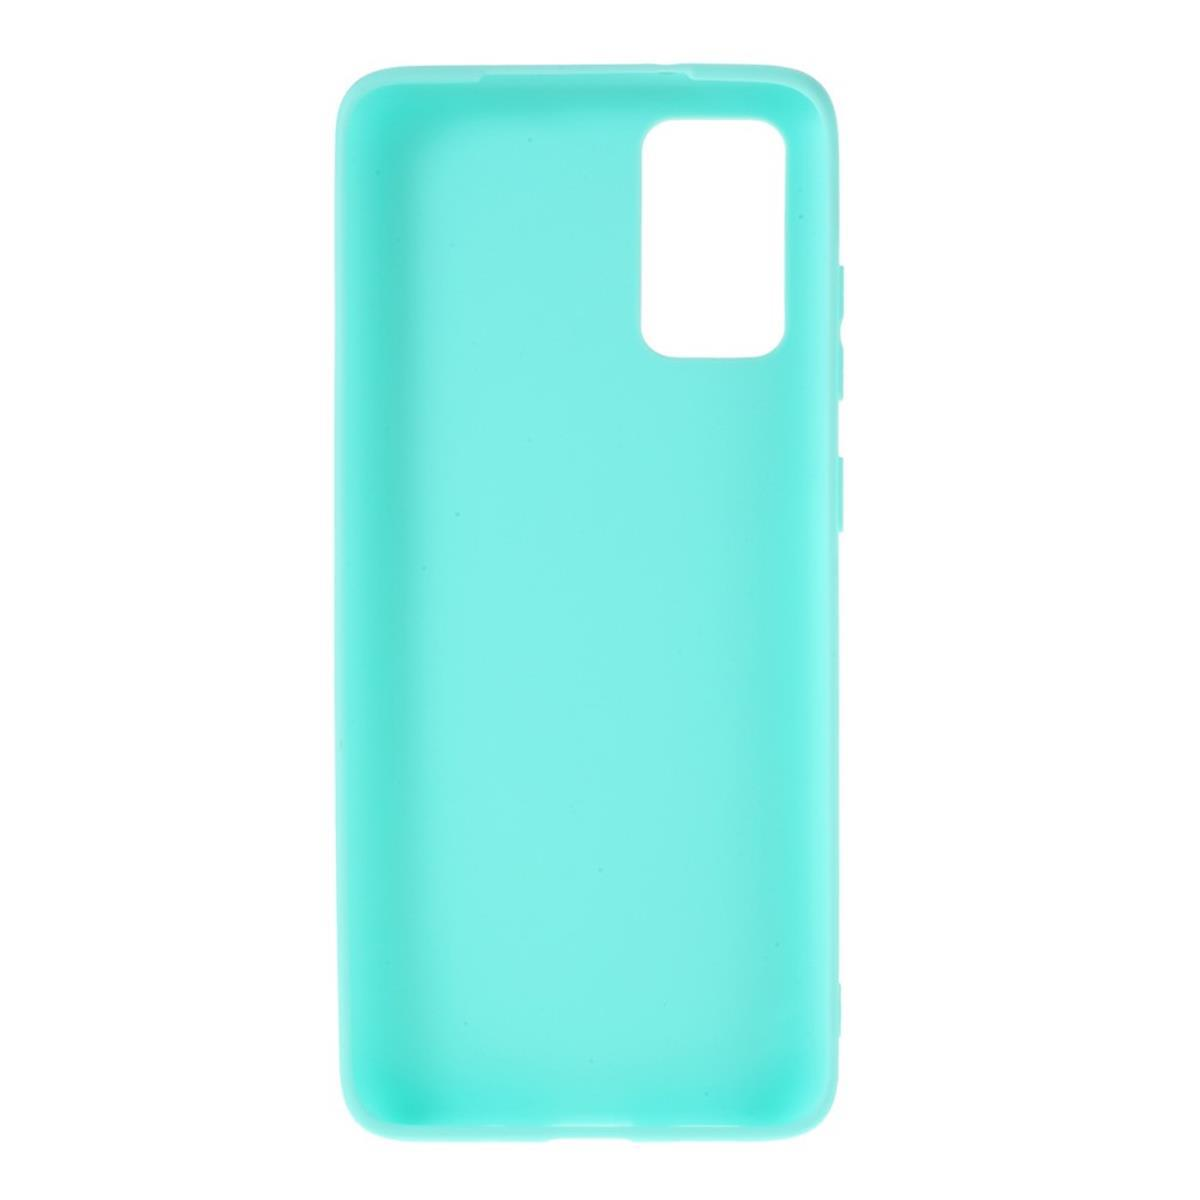 COVERKINGZ Handycase Galaxy A41, Grün Backcover, Samsung, Silikon, aus